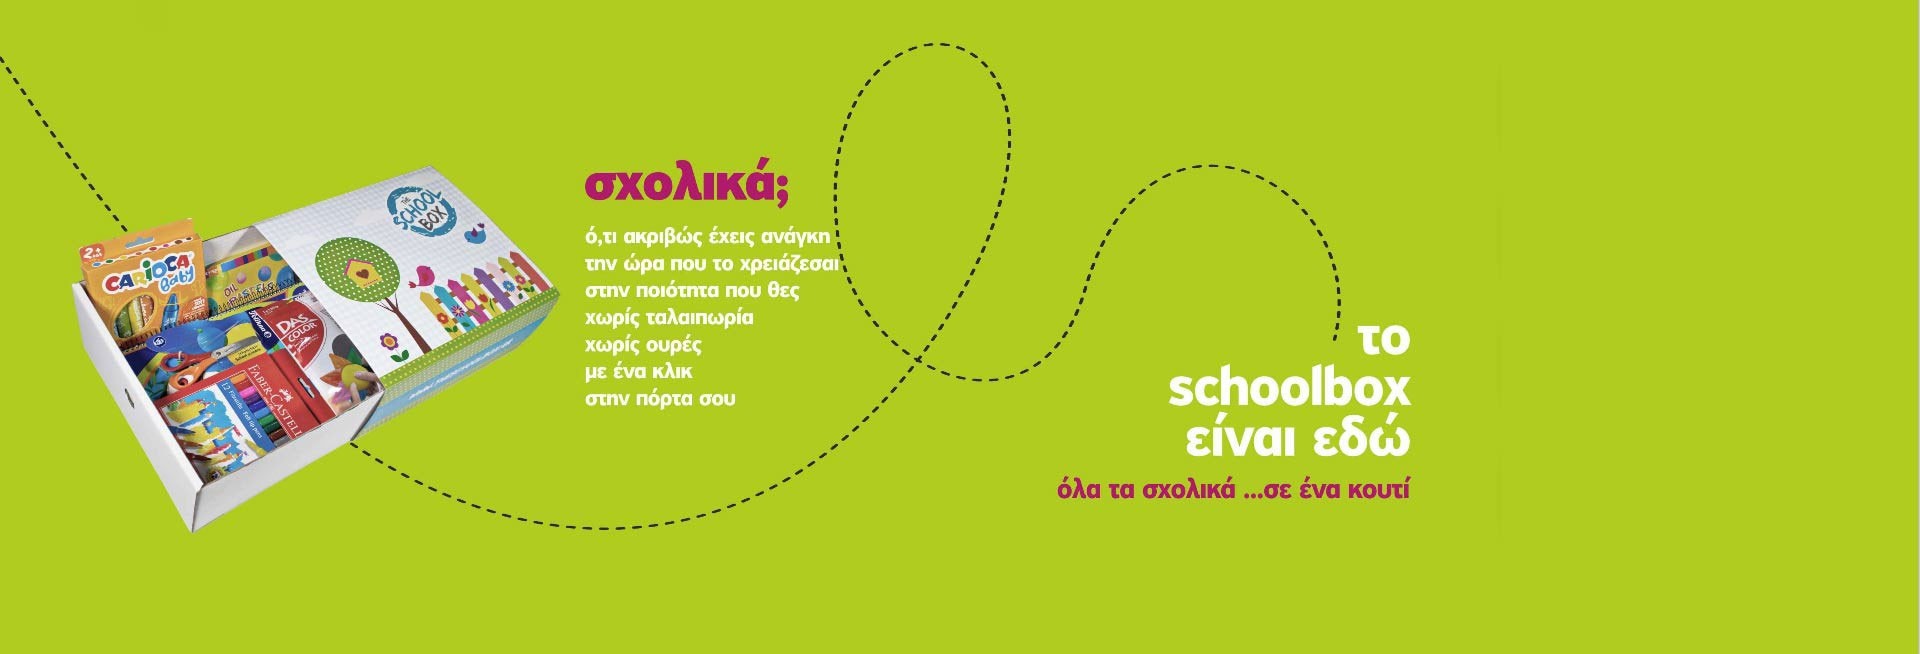 Schoolbox-homepage-banner